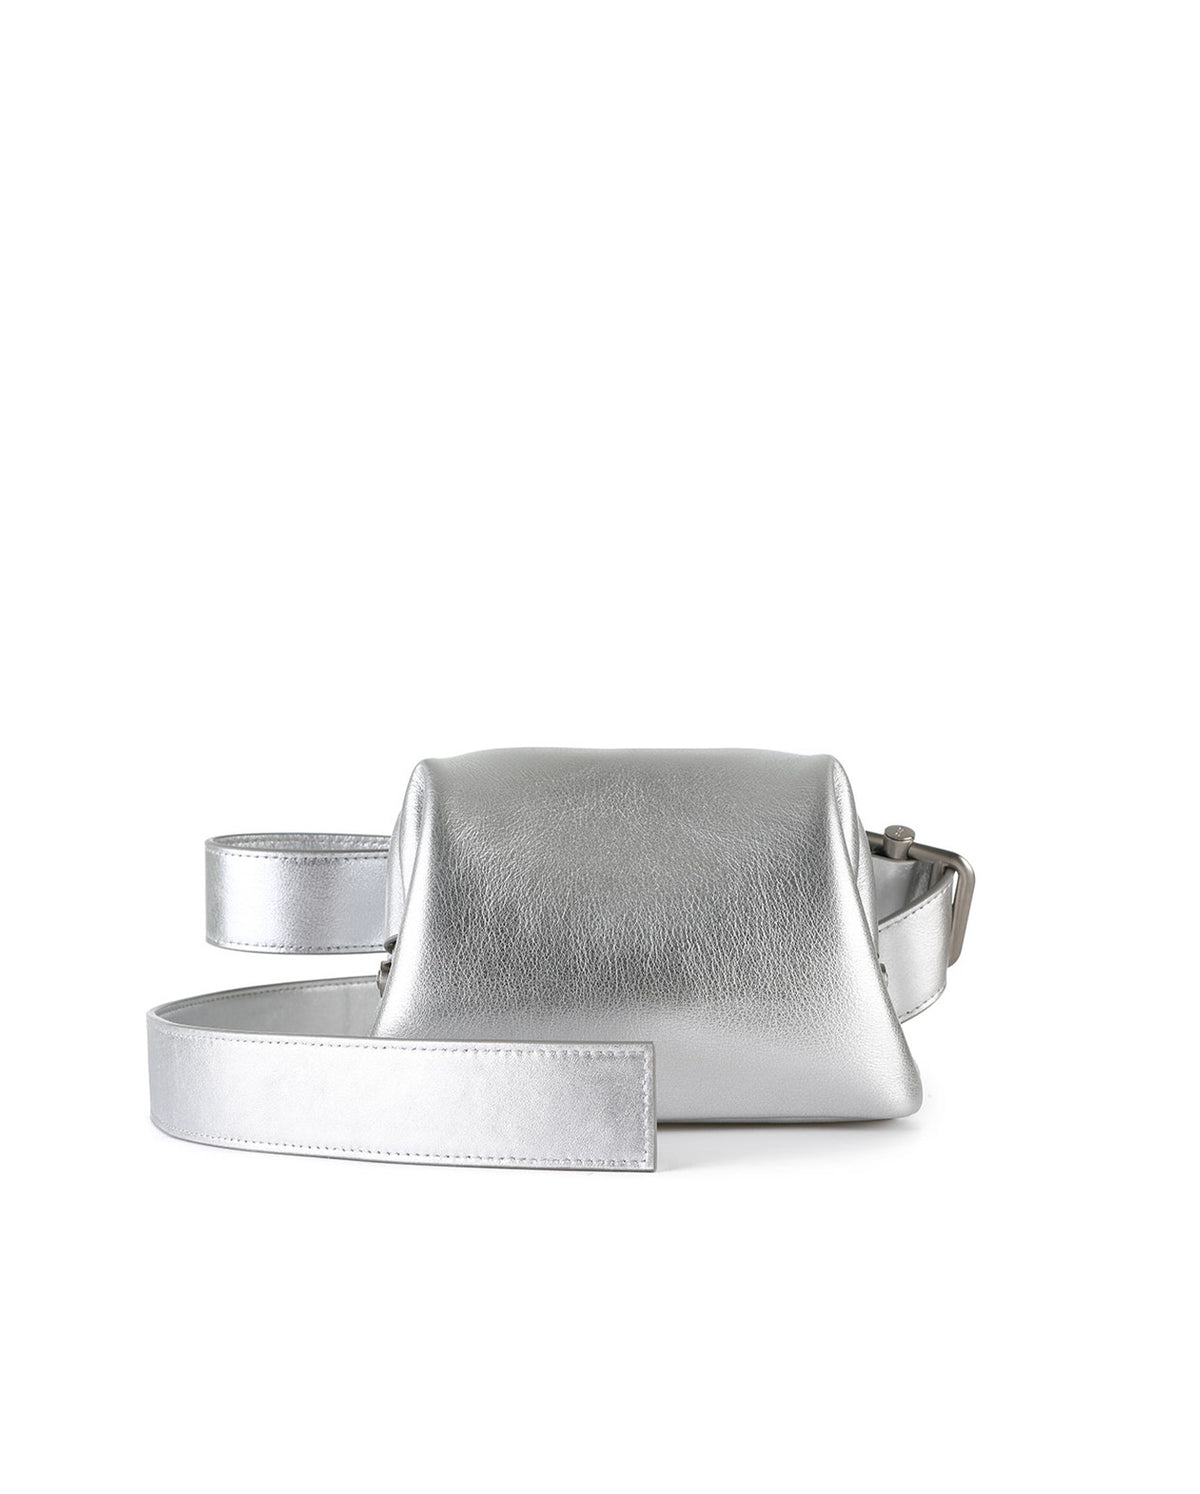 Pecan Brot Handbag - Silver